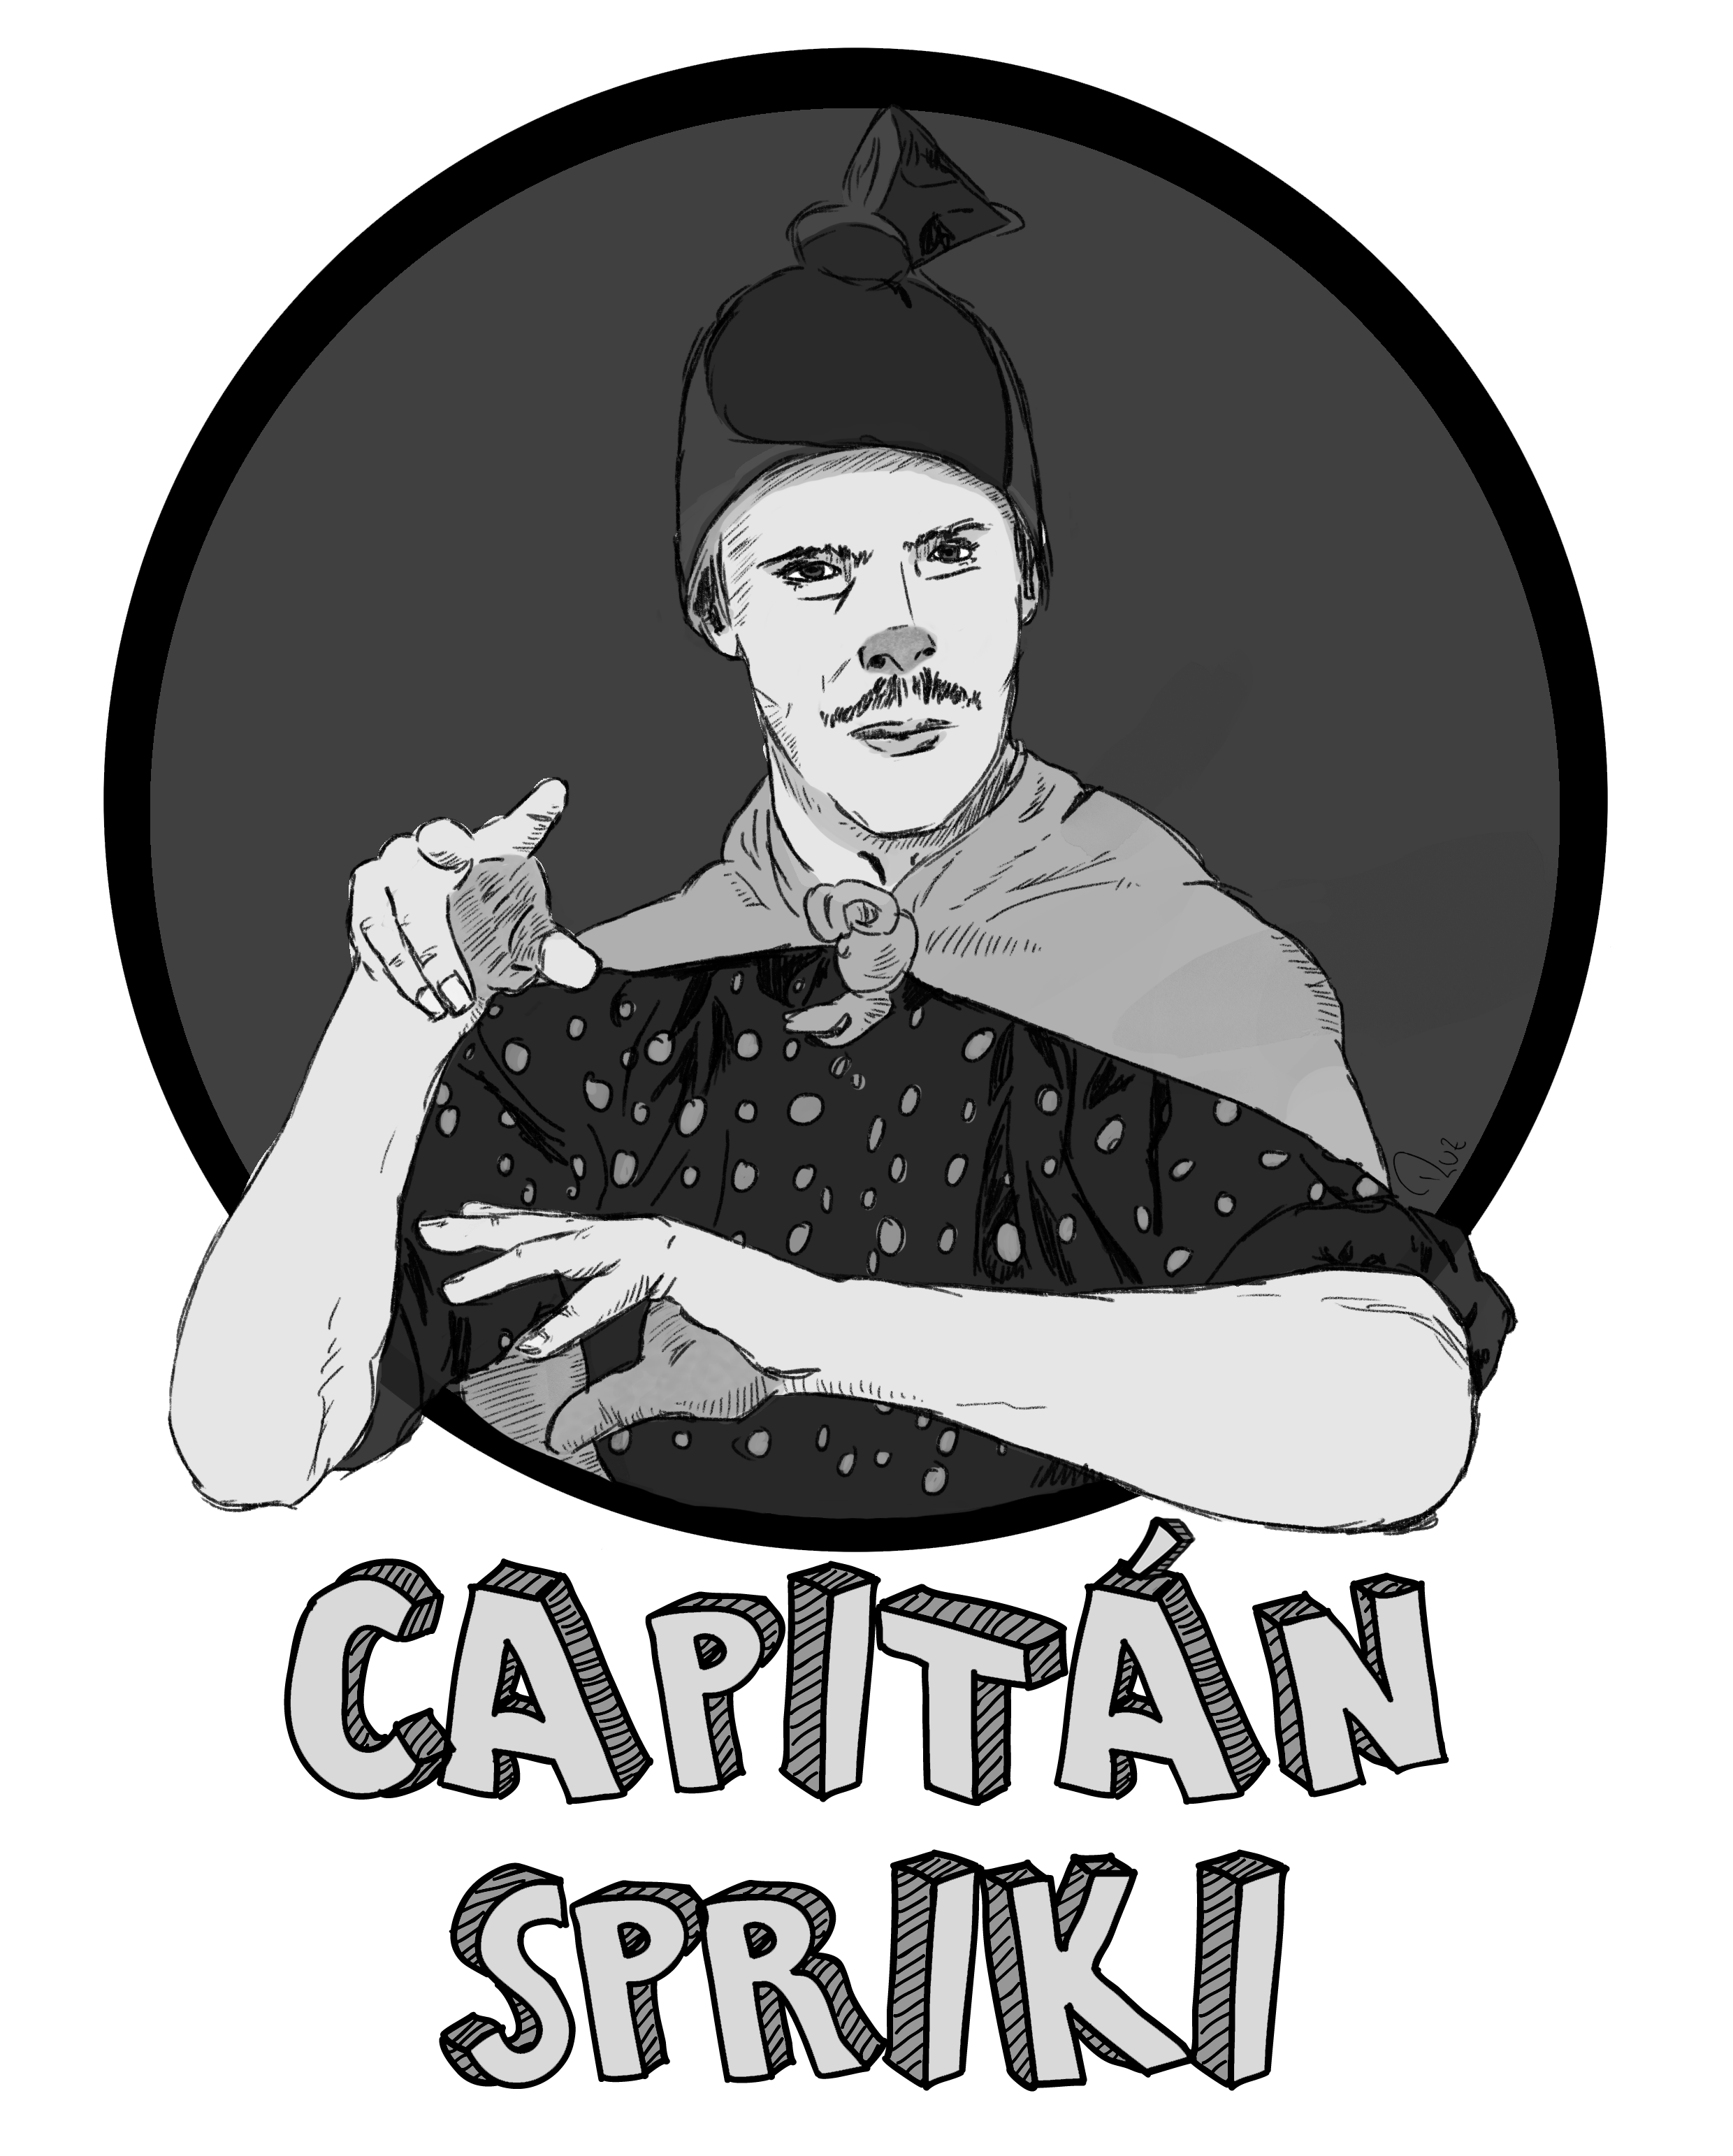 Capitán Spriki